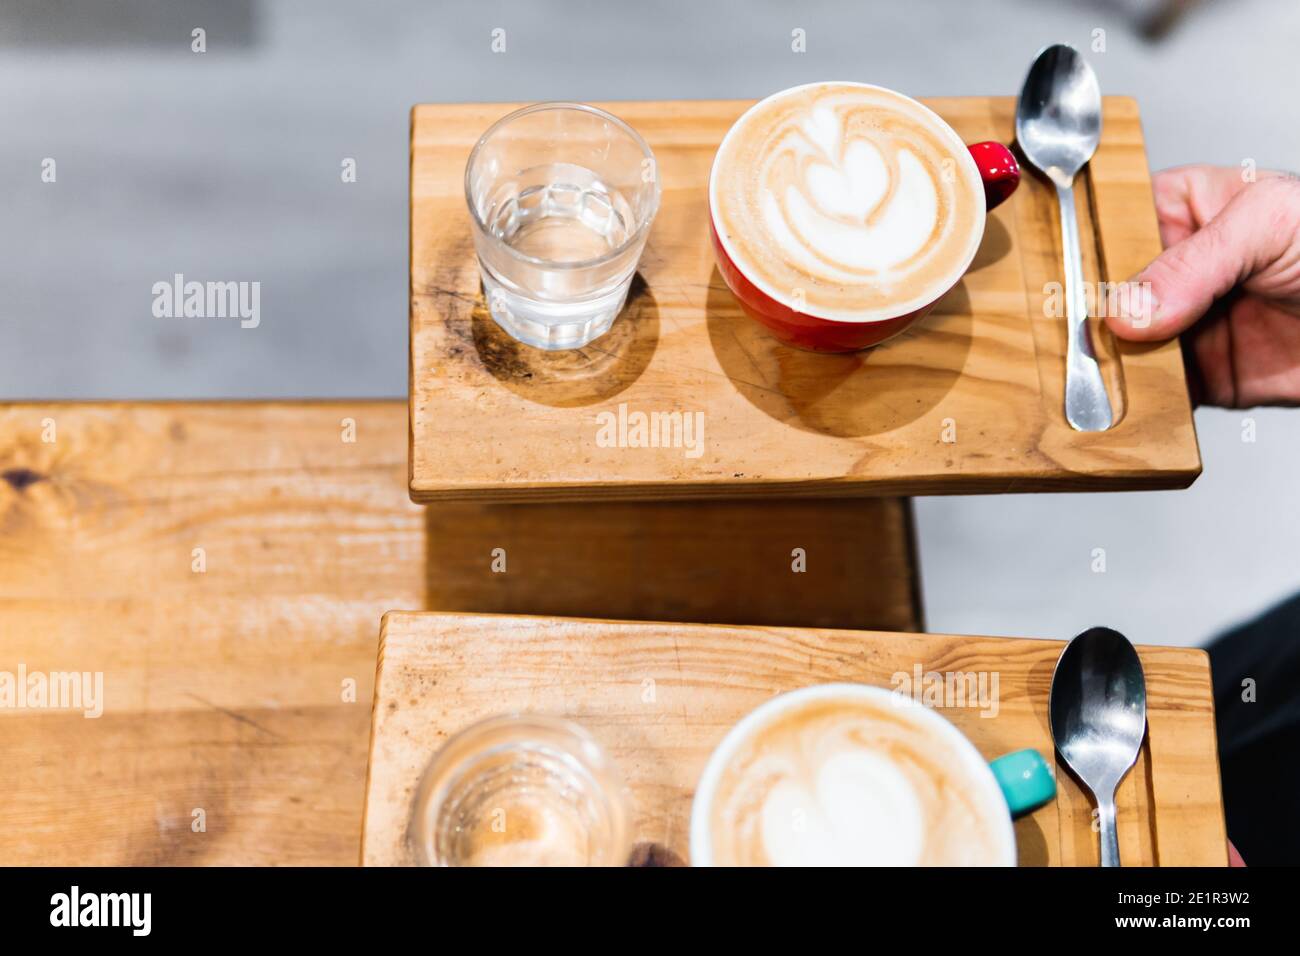 Zwei Tassen Cappuccino auf Holztabletts. Kaffee- und Kellnerkonzept Stockfoto